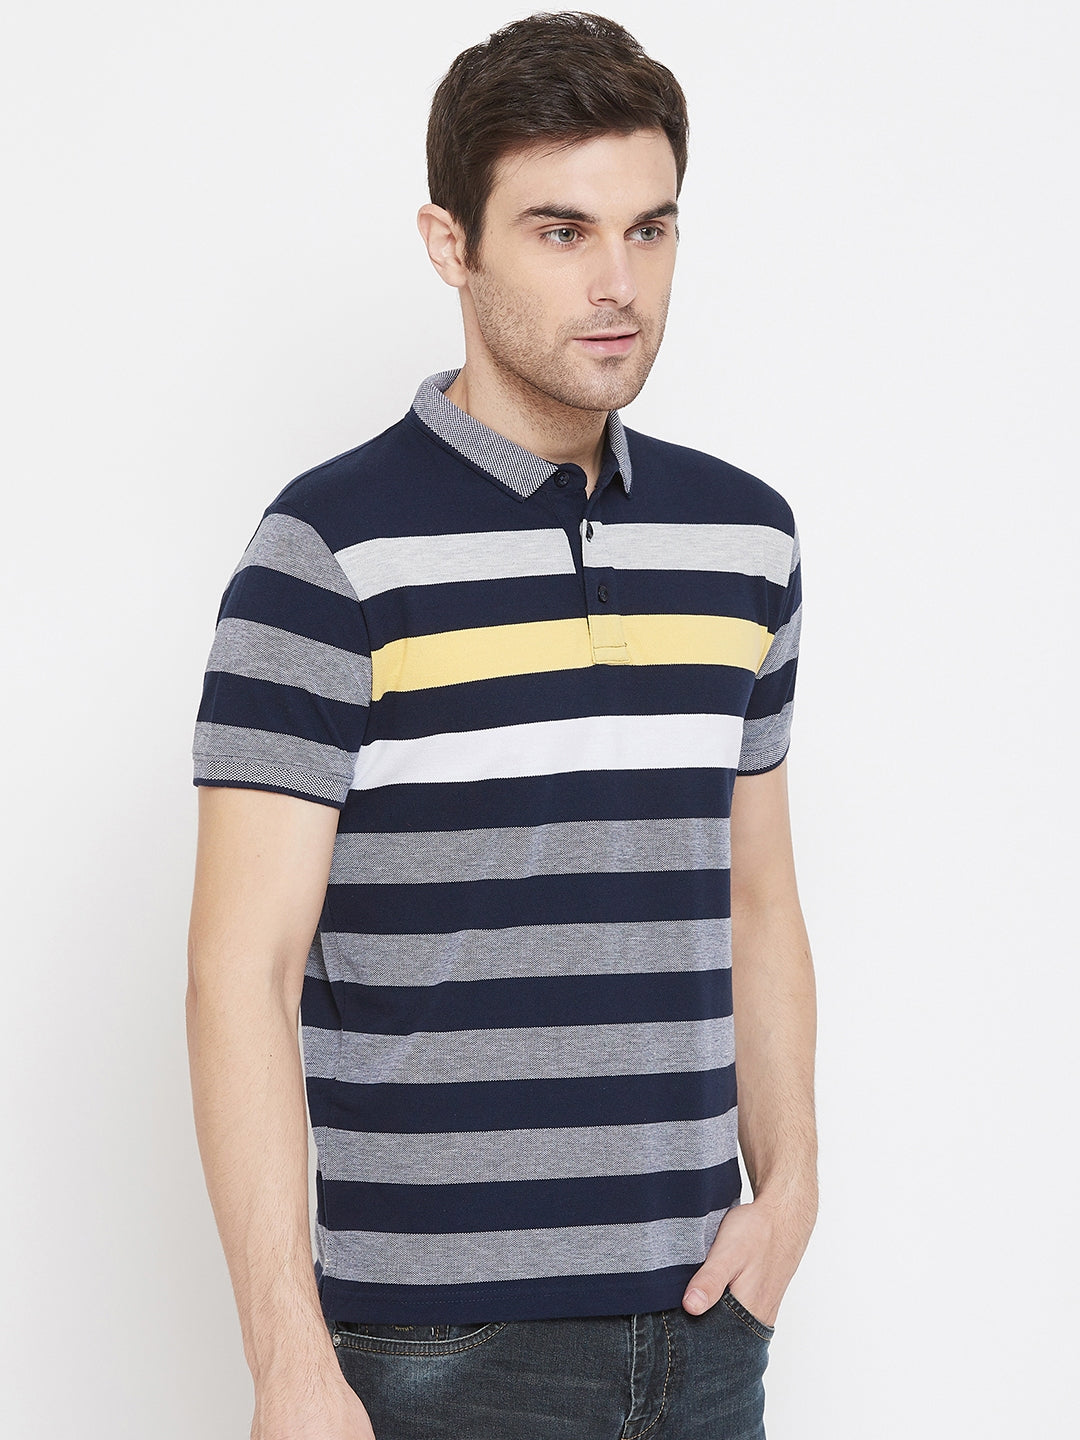 Navy Blue Striped T-shirt - Men T-Shirts